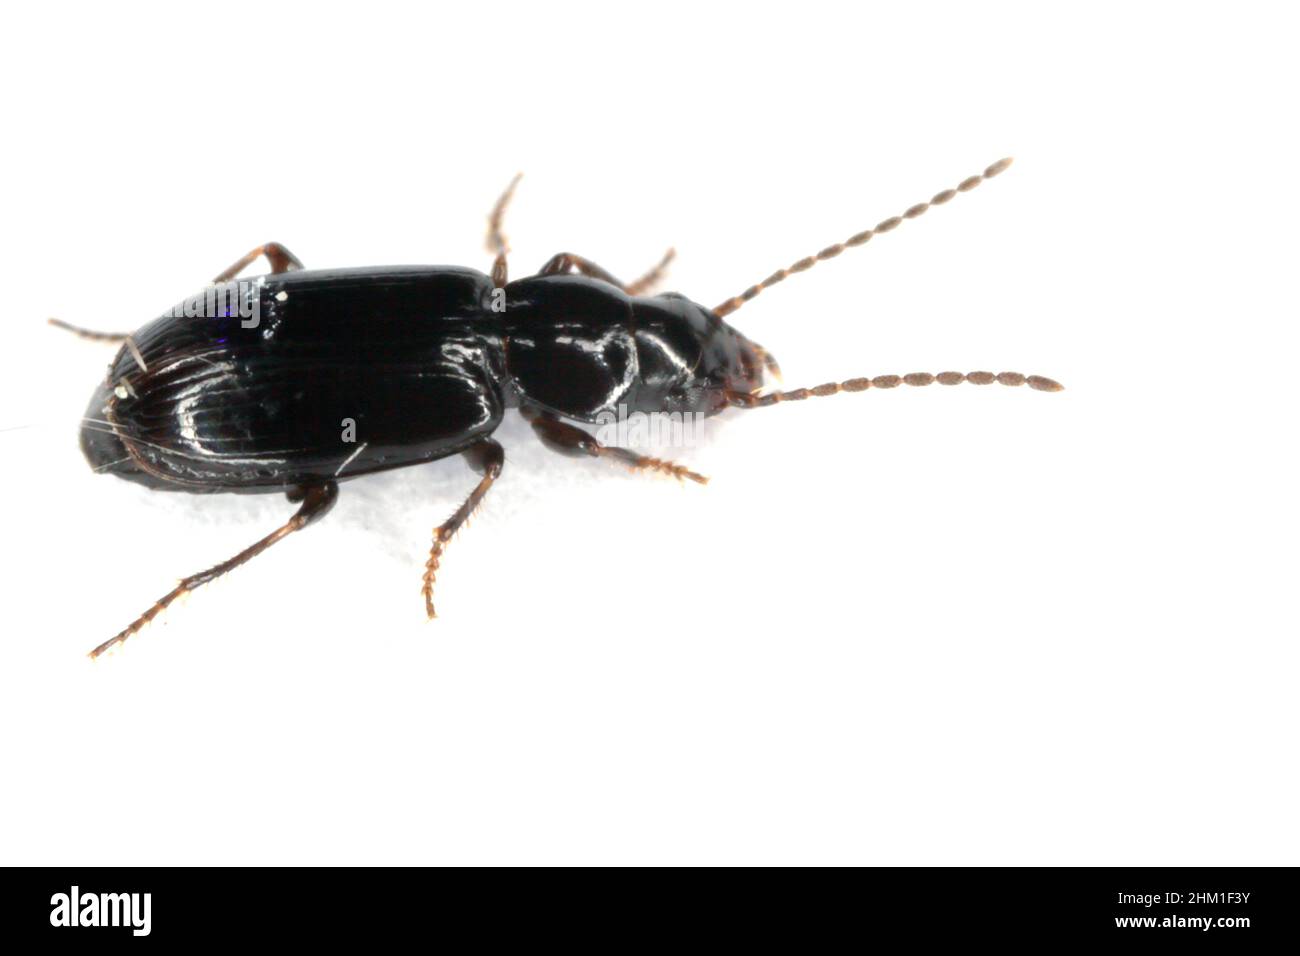 Coleoptera Carabidae ground beetle isolated on white background Stock Photo